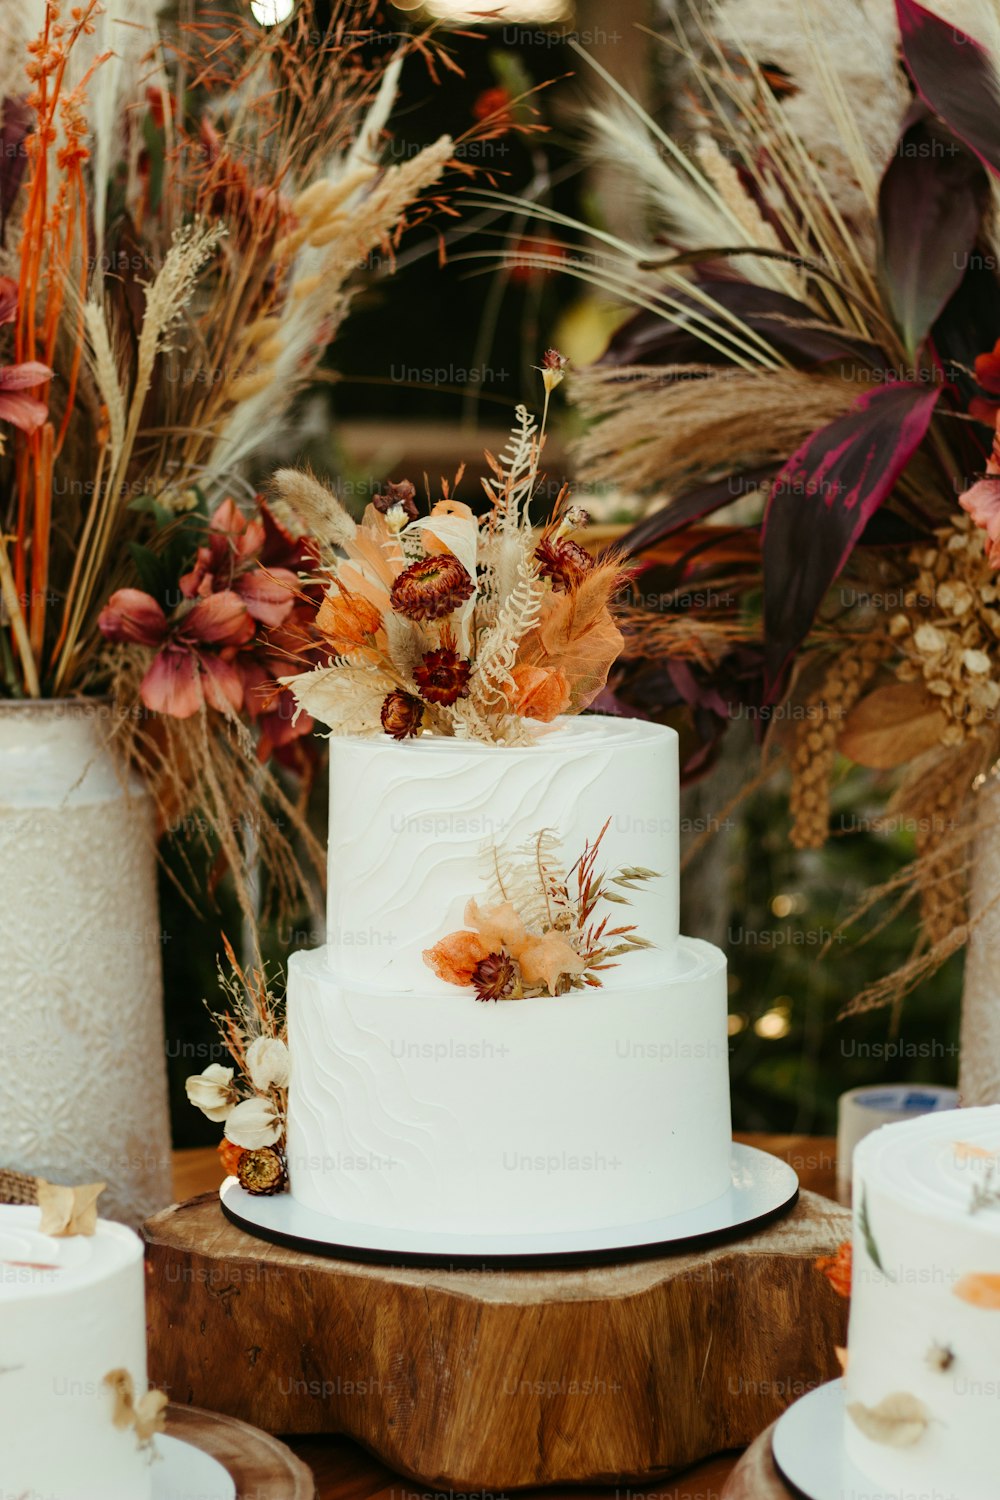 un gâteau de mariage blanc posé sur une table en bois